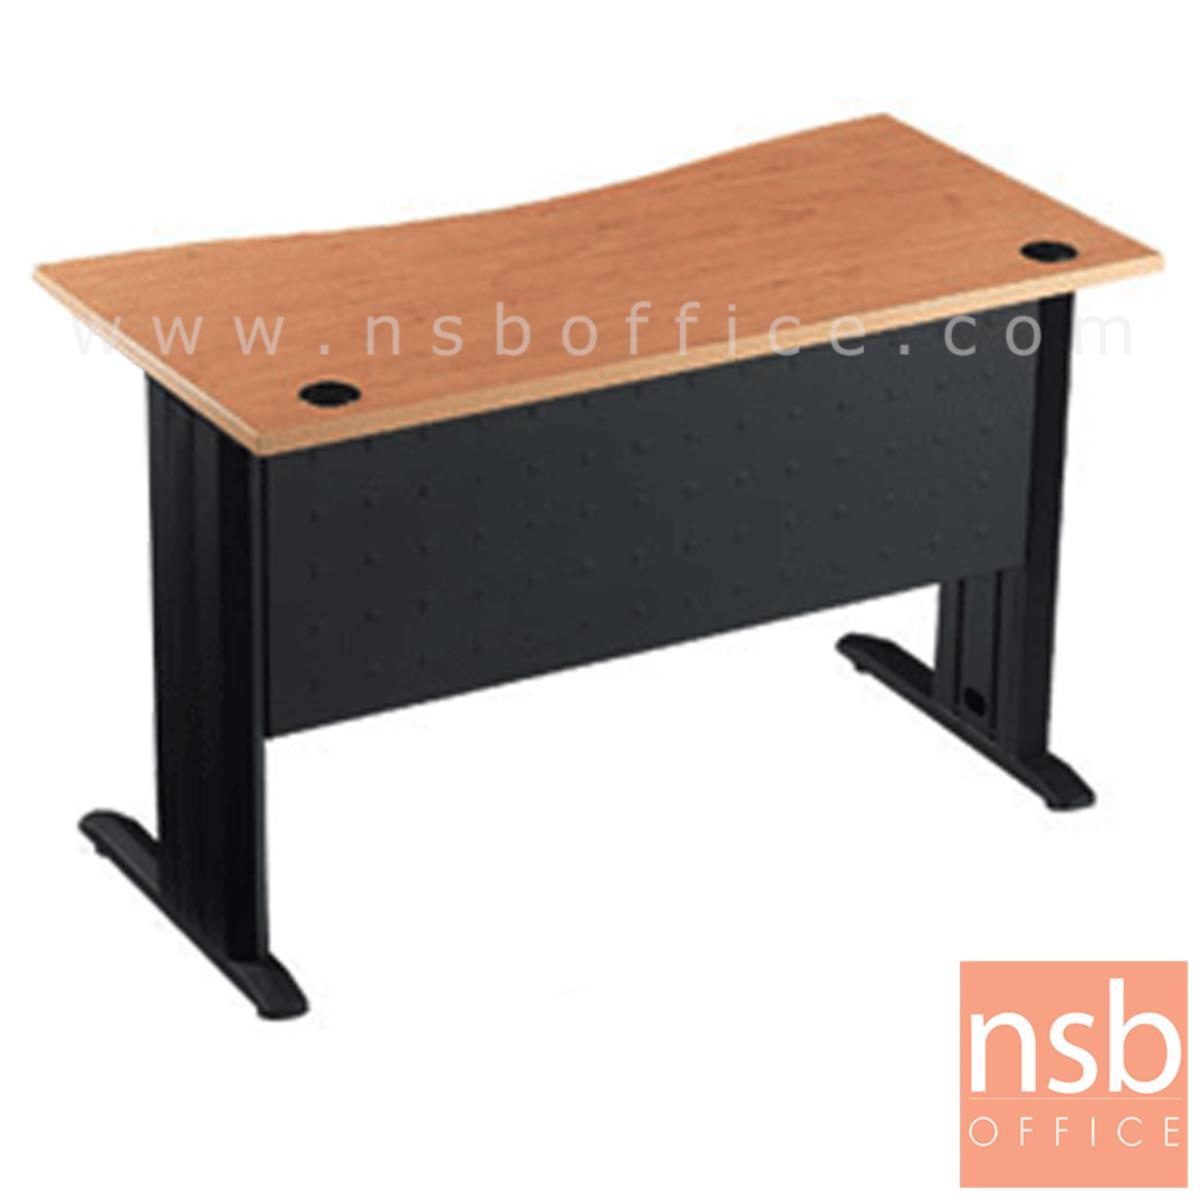 A10A006:โต๊ะทำงานหน้าโค้งเว้า ขนาด 120W*75H cm. บังโป้เหล็ก รุ่น S-DK-0621  ขาเหล็กตัวแอลสีดำ